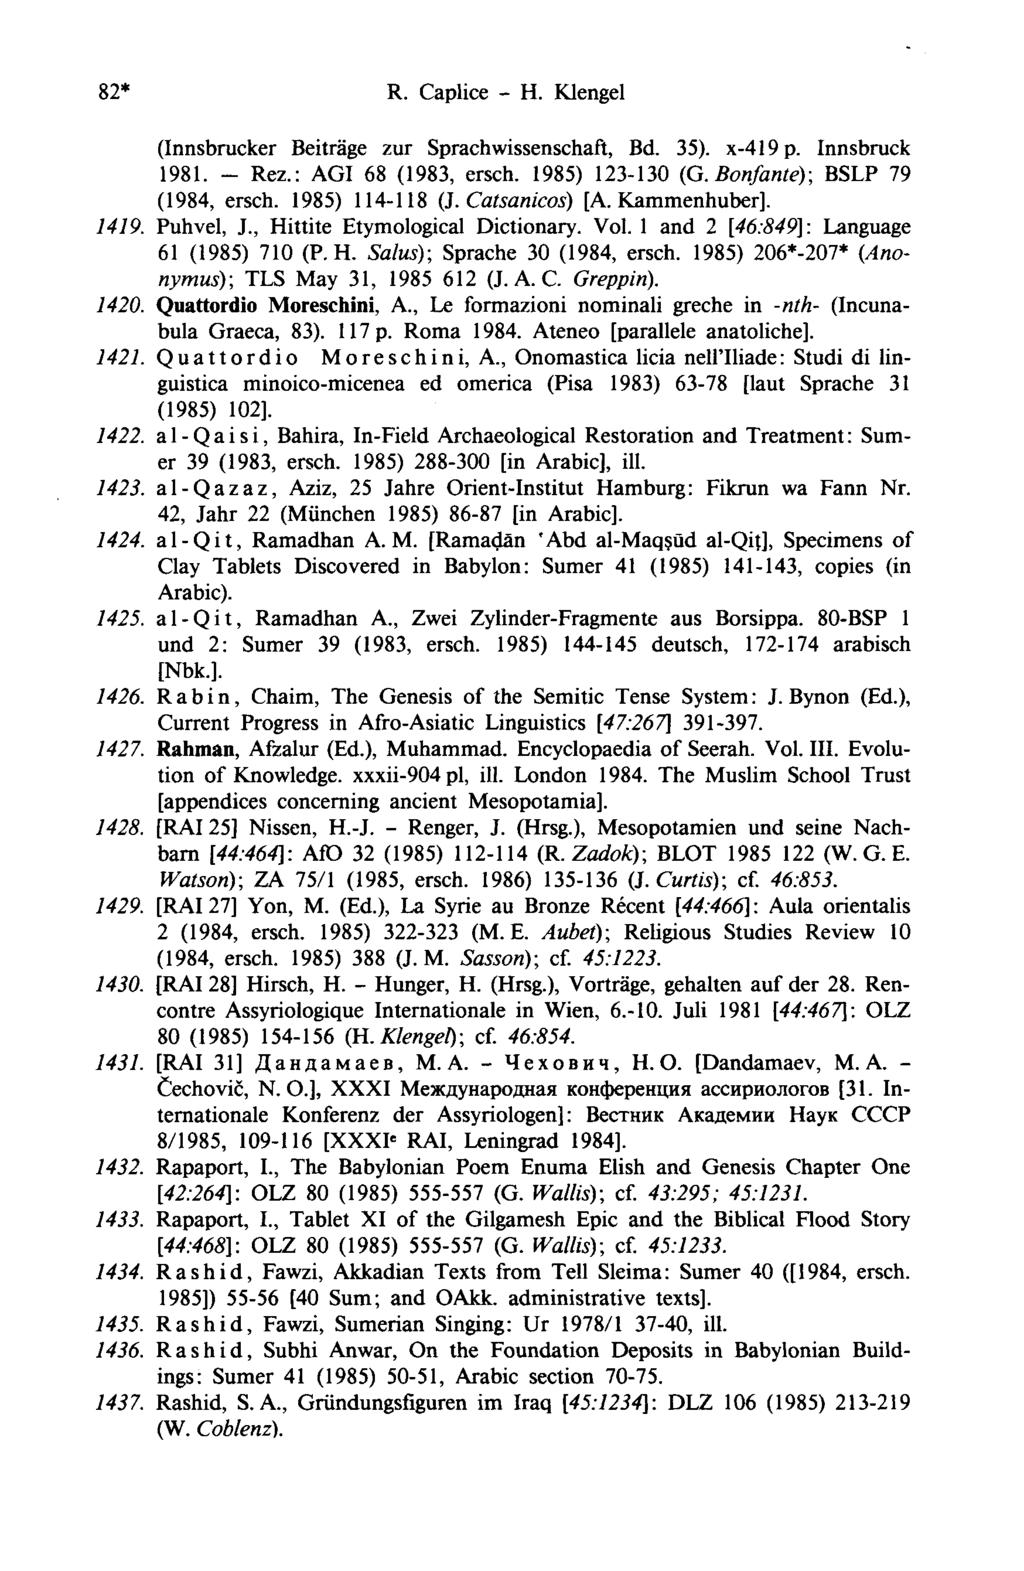 82* R. Caplice - H. Klengel (Innsbrucker Beiträge zur Sprachwissenschaft, Bd. 35).. p x419 Innsbruck 1981. - Rez.: AGI 68 (1983, ersch. 1985) 123-130 (G. Bonfante); BSLP 79 (1984, ersch.